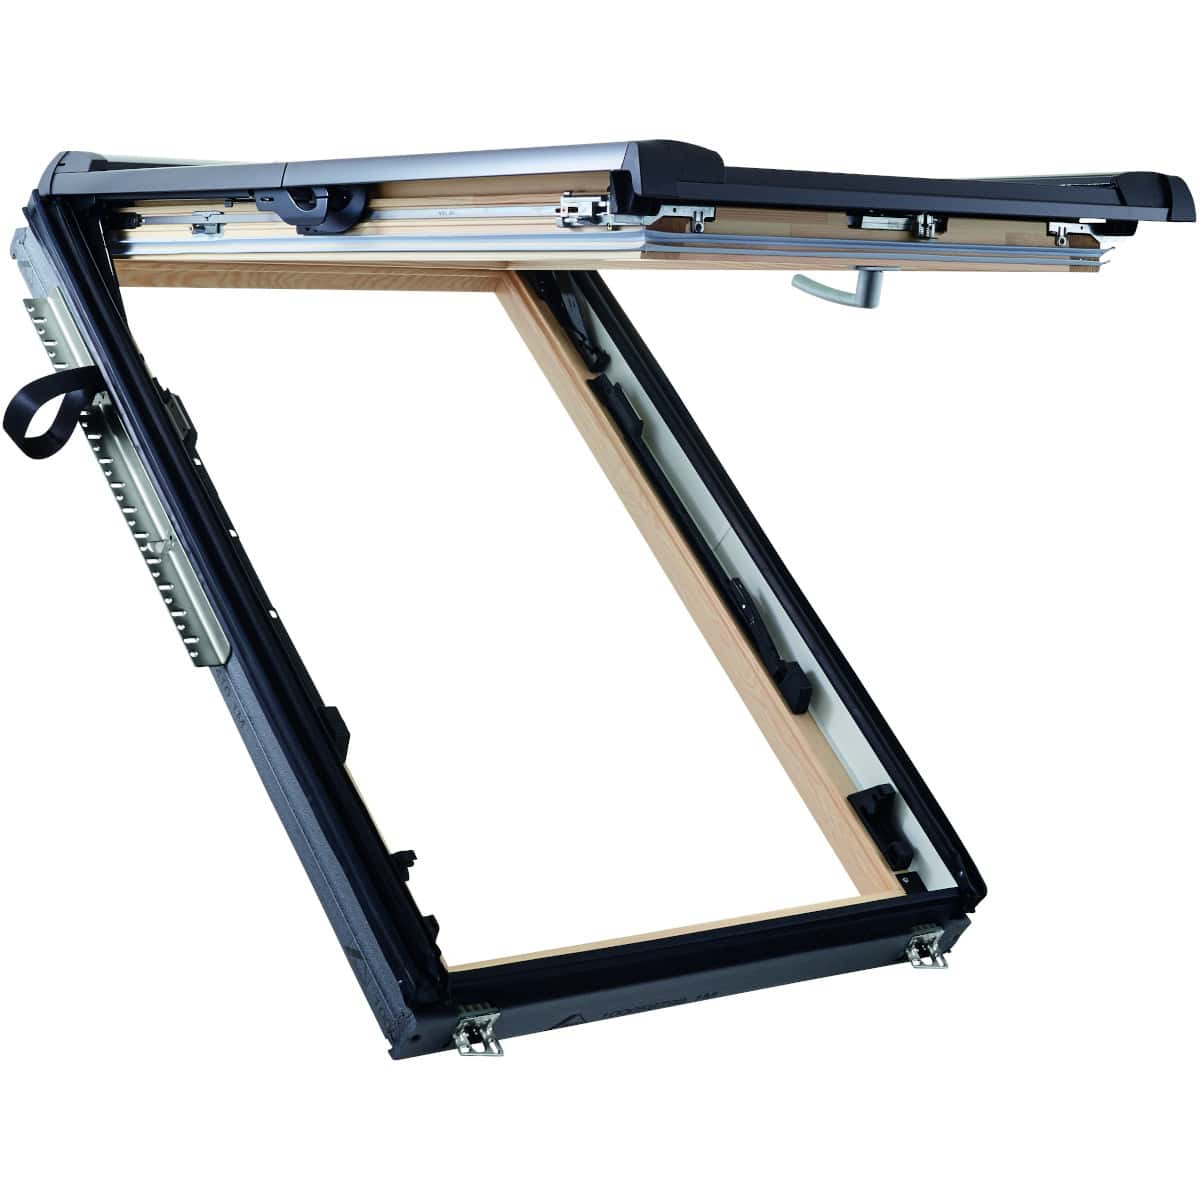 Окно мансардное деревянное с нижней ручкой Roto R86E H200. 2 камерный стеклопакет. ThermoBlock WD.